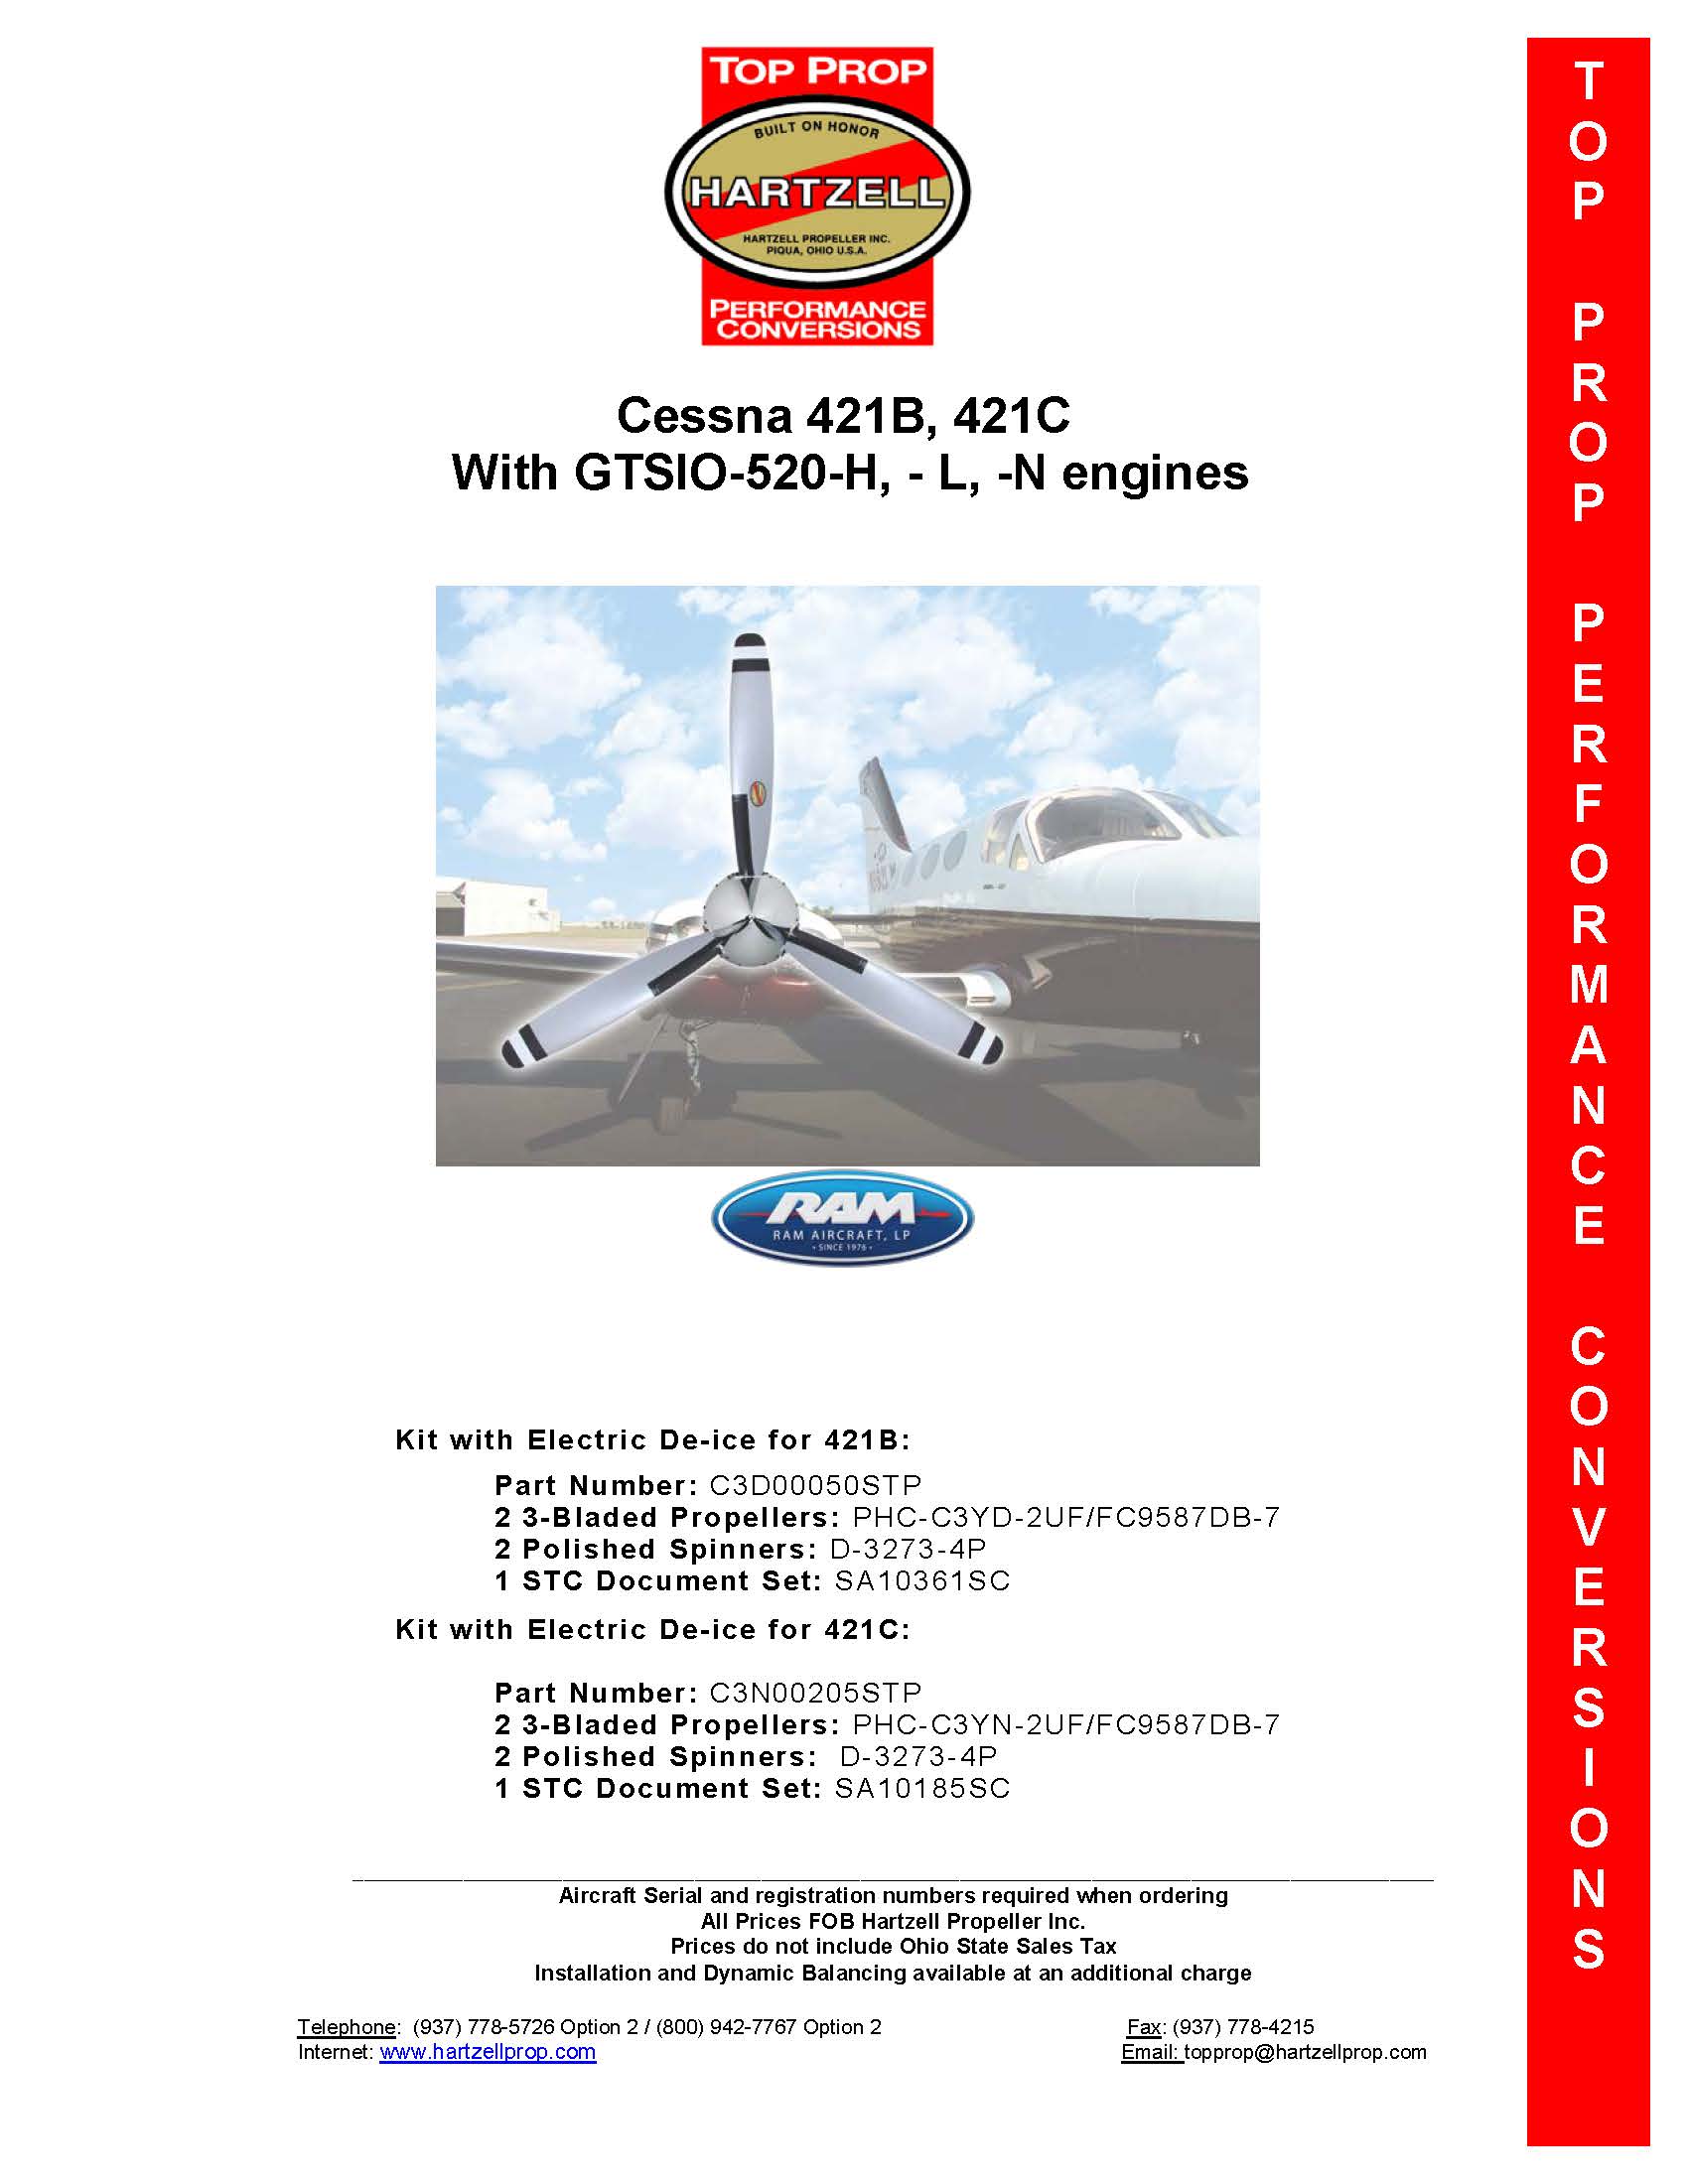 Cessna-421B-C3D00050STP-PAGE-1